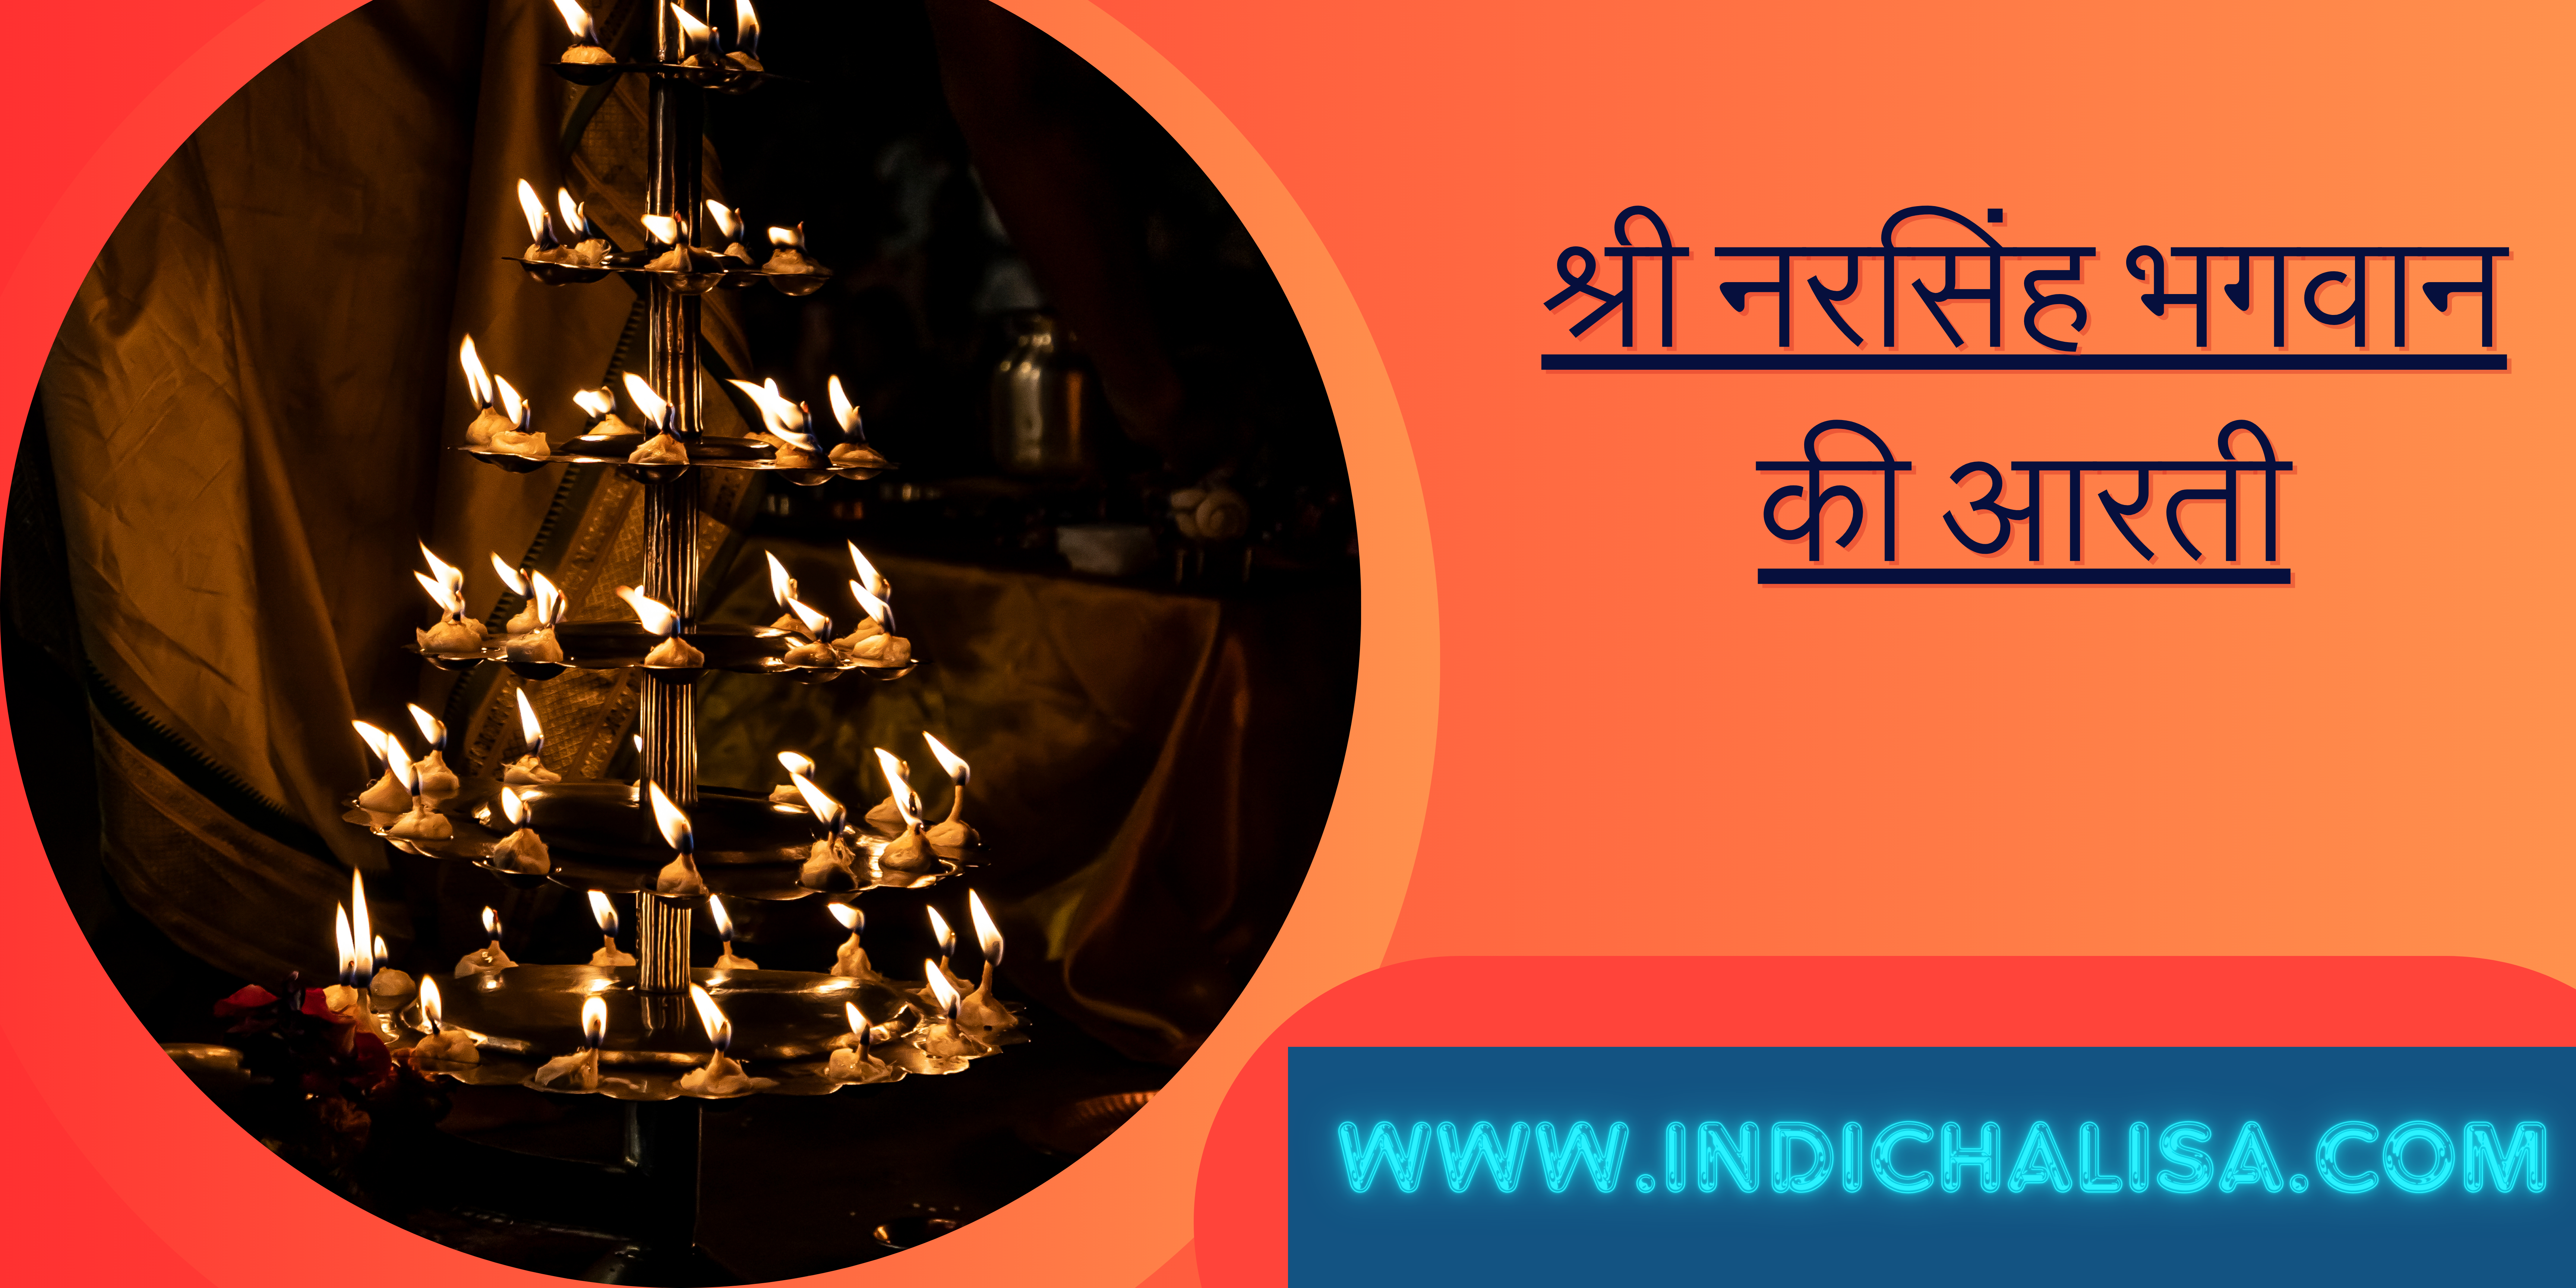 श्री नरसिंह भगवान की आरती|श्री नरसिंह भगवान की आरती|Indichalisa|Indichalisa